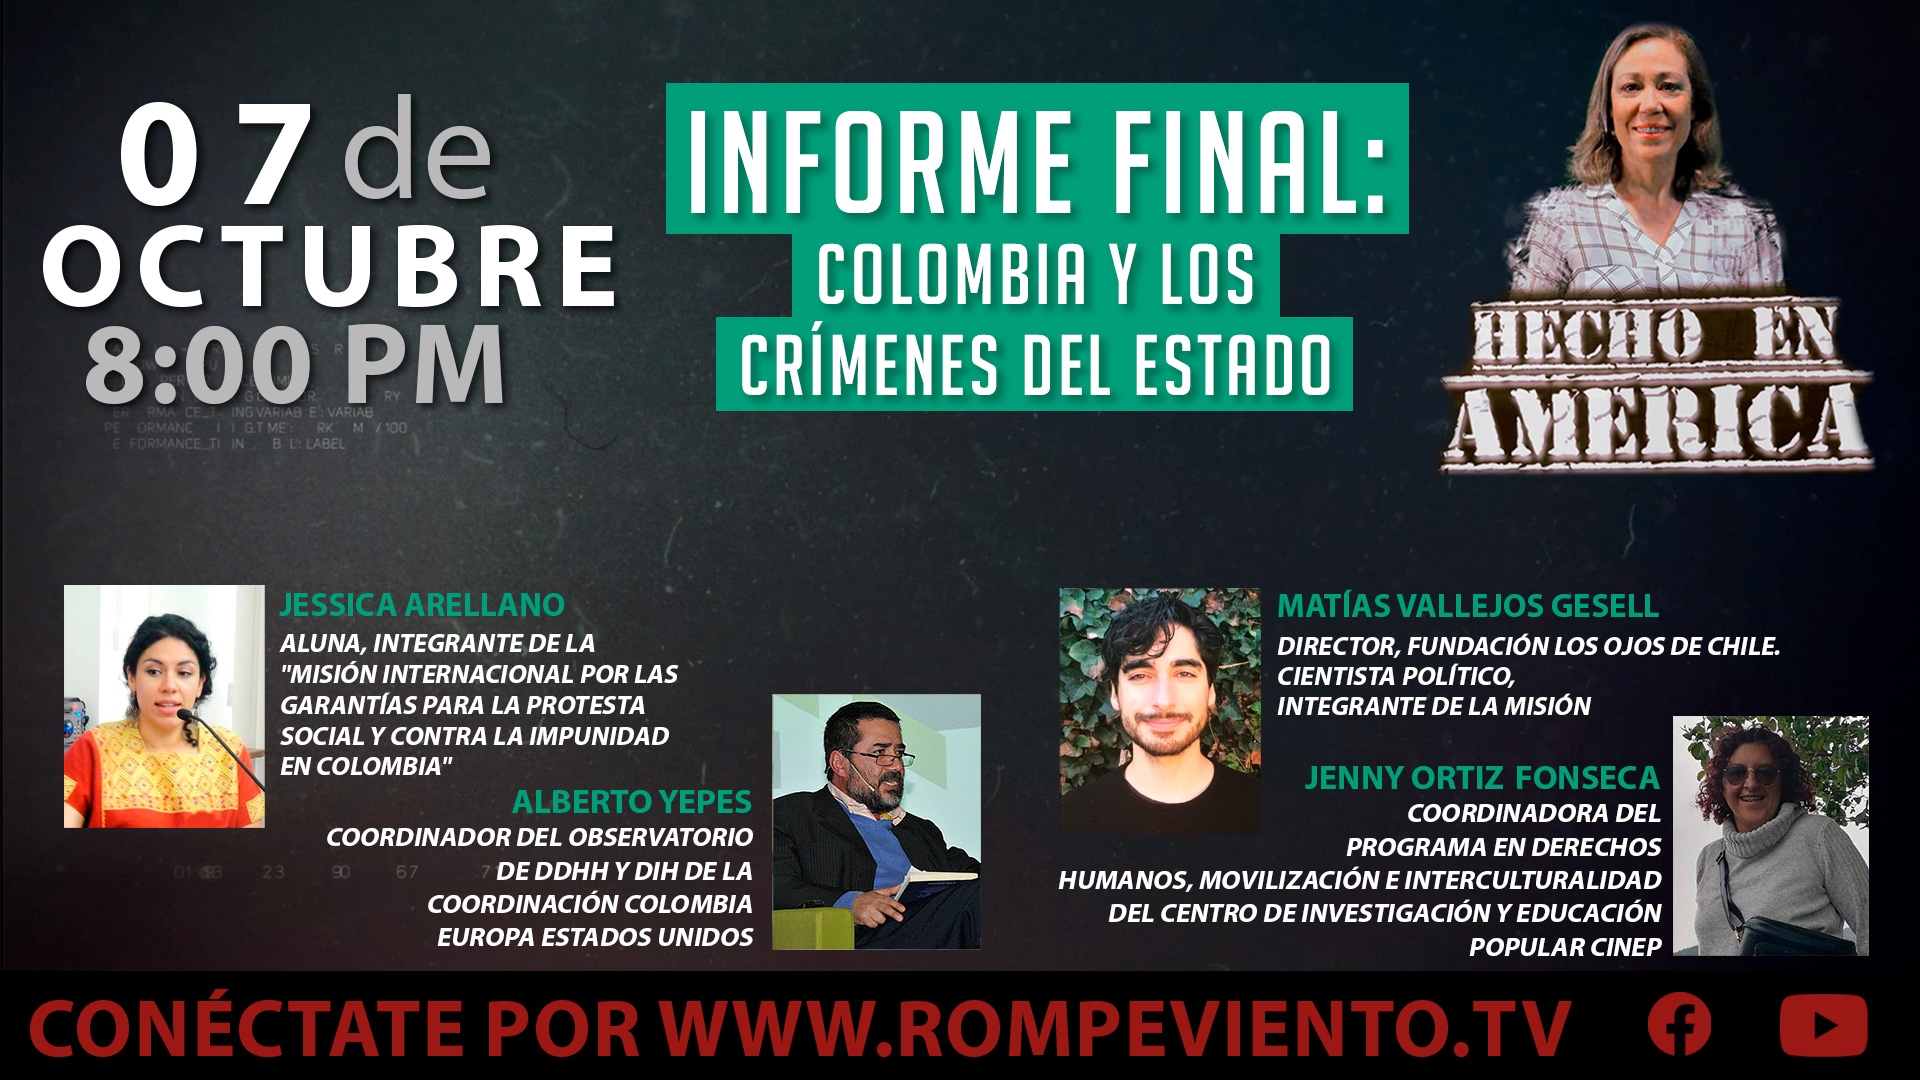 Informe final: Colombia y los crímenes del estado - Hecho en América